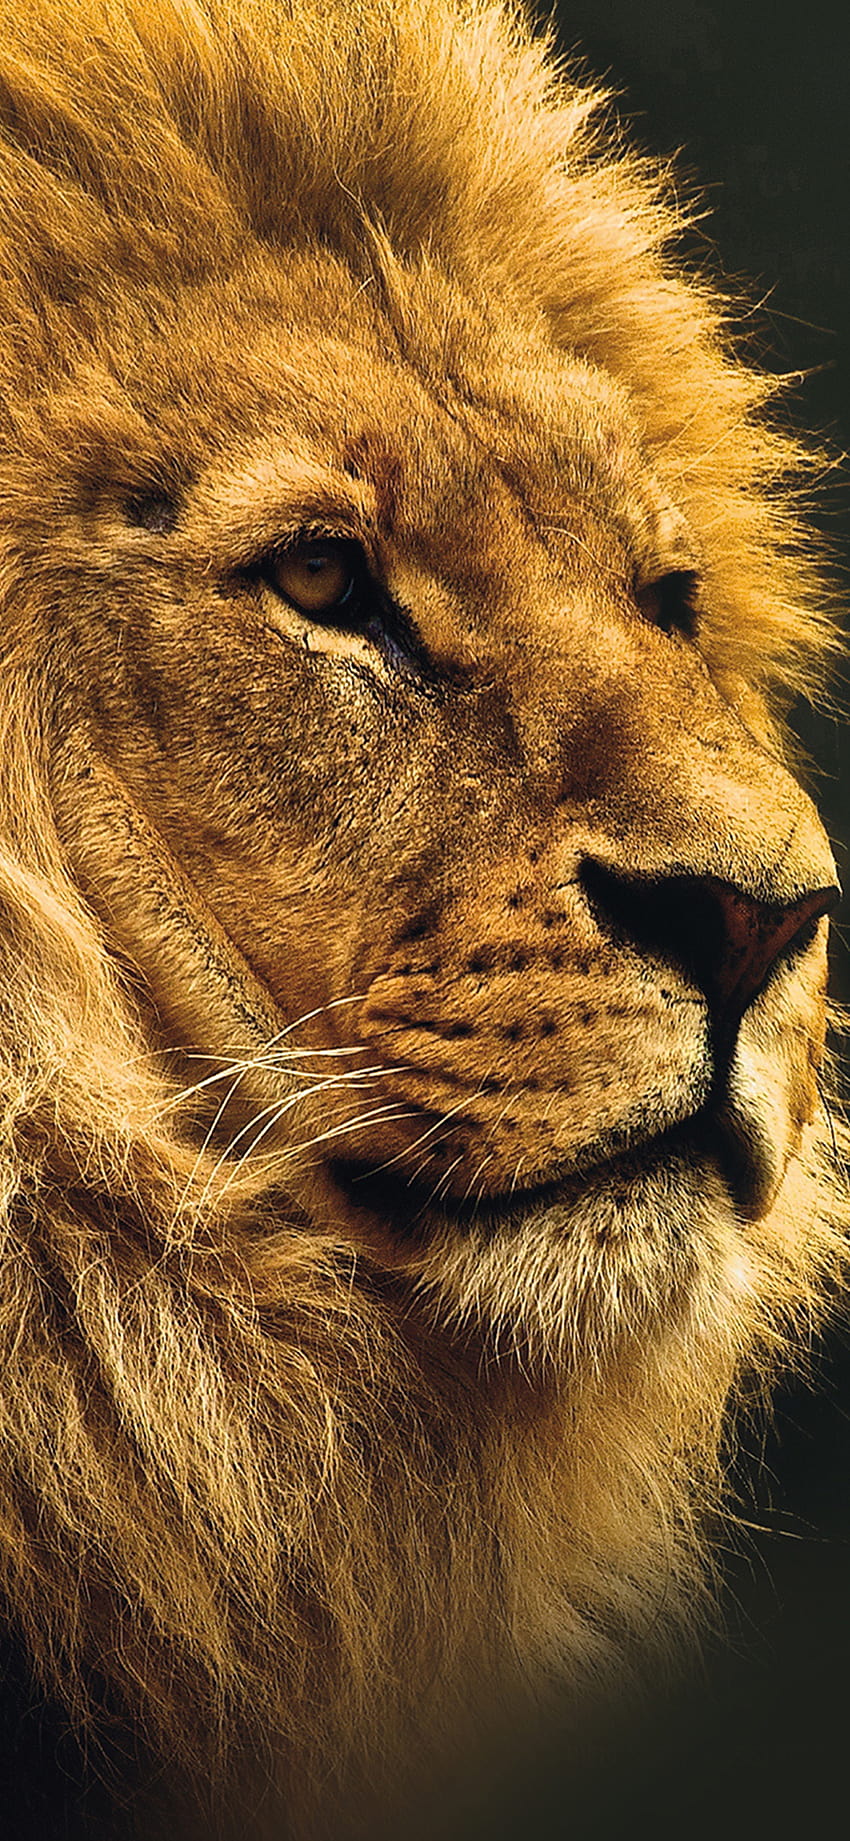 7 Lion Iphone, lion face iphone HD phone wallpaper | Pxfuel